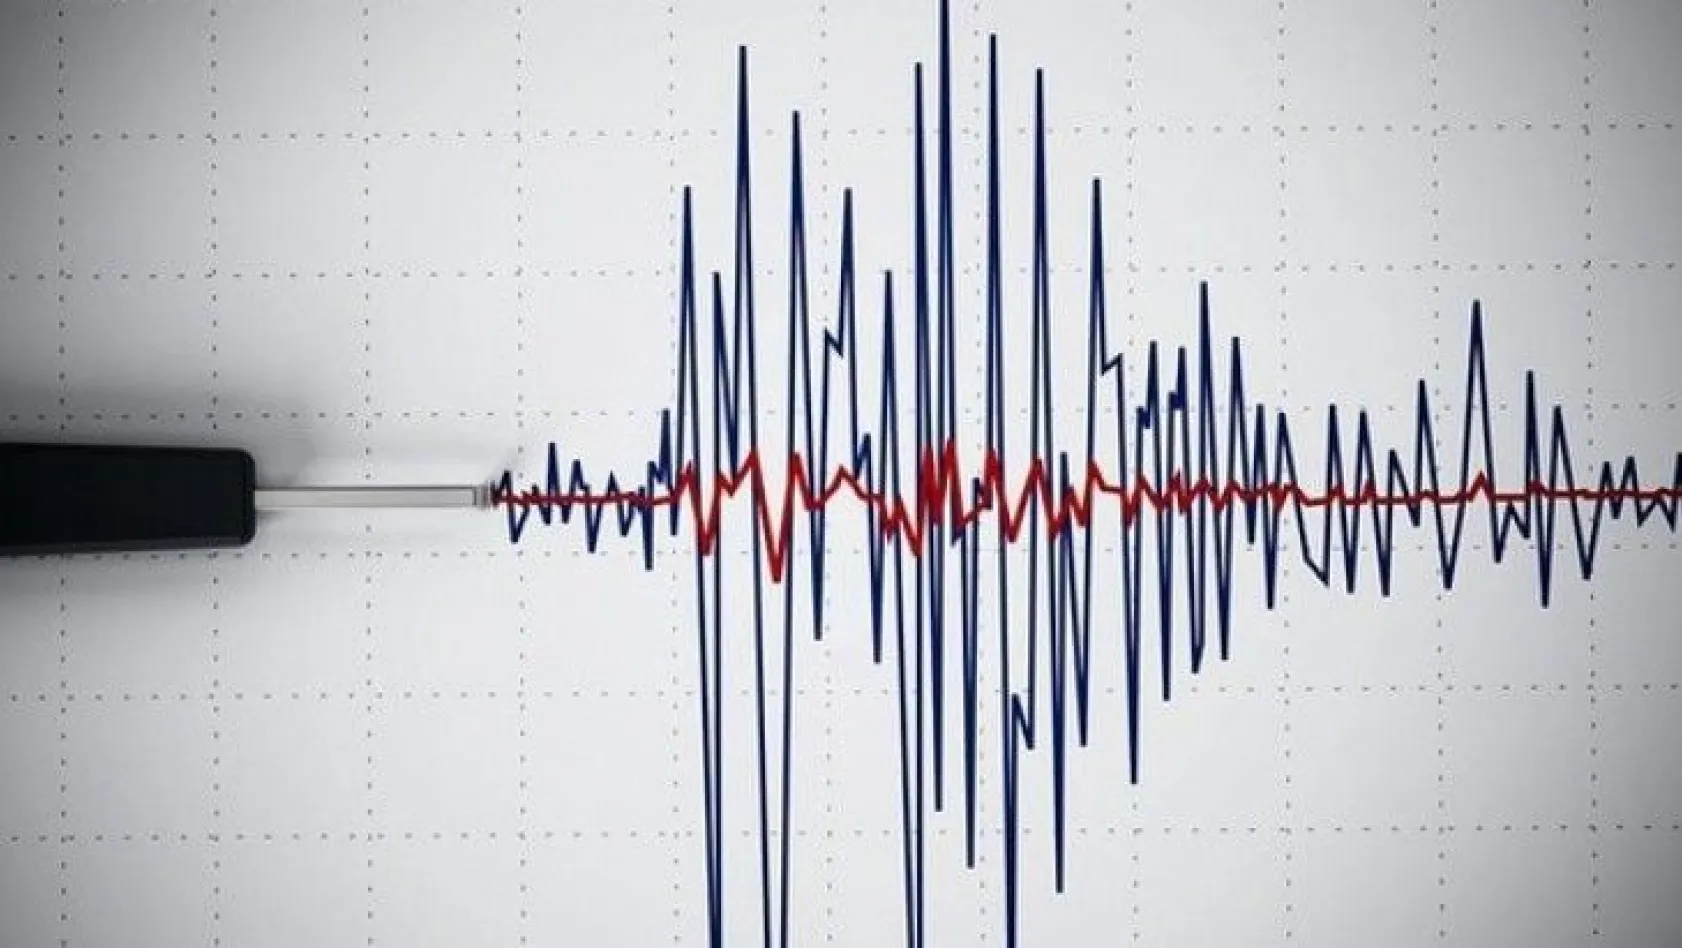 Malatya'da 3.3 büyüklüğünde deprem